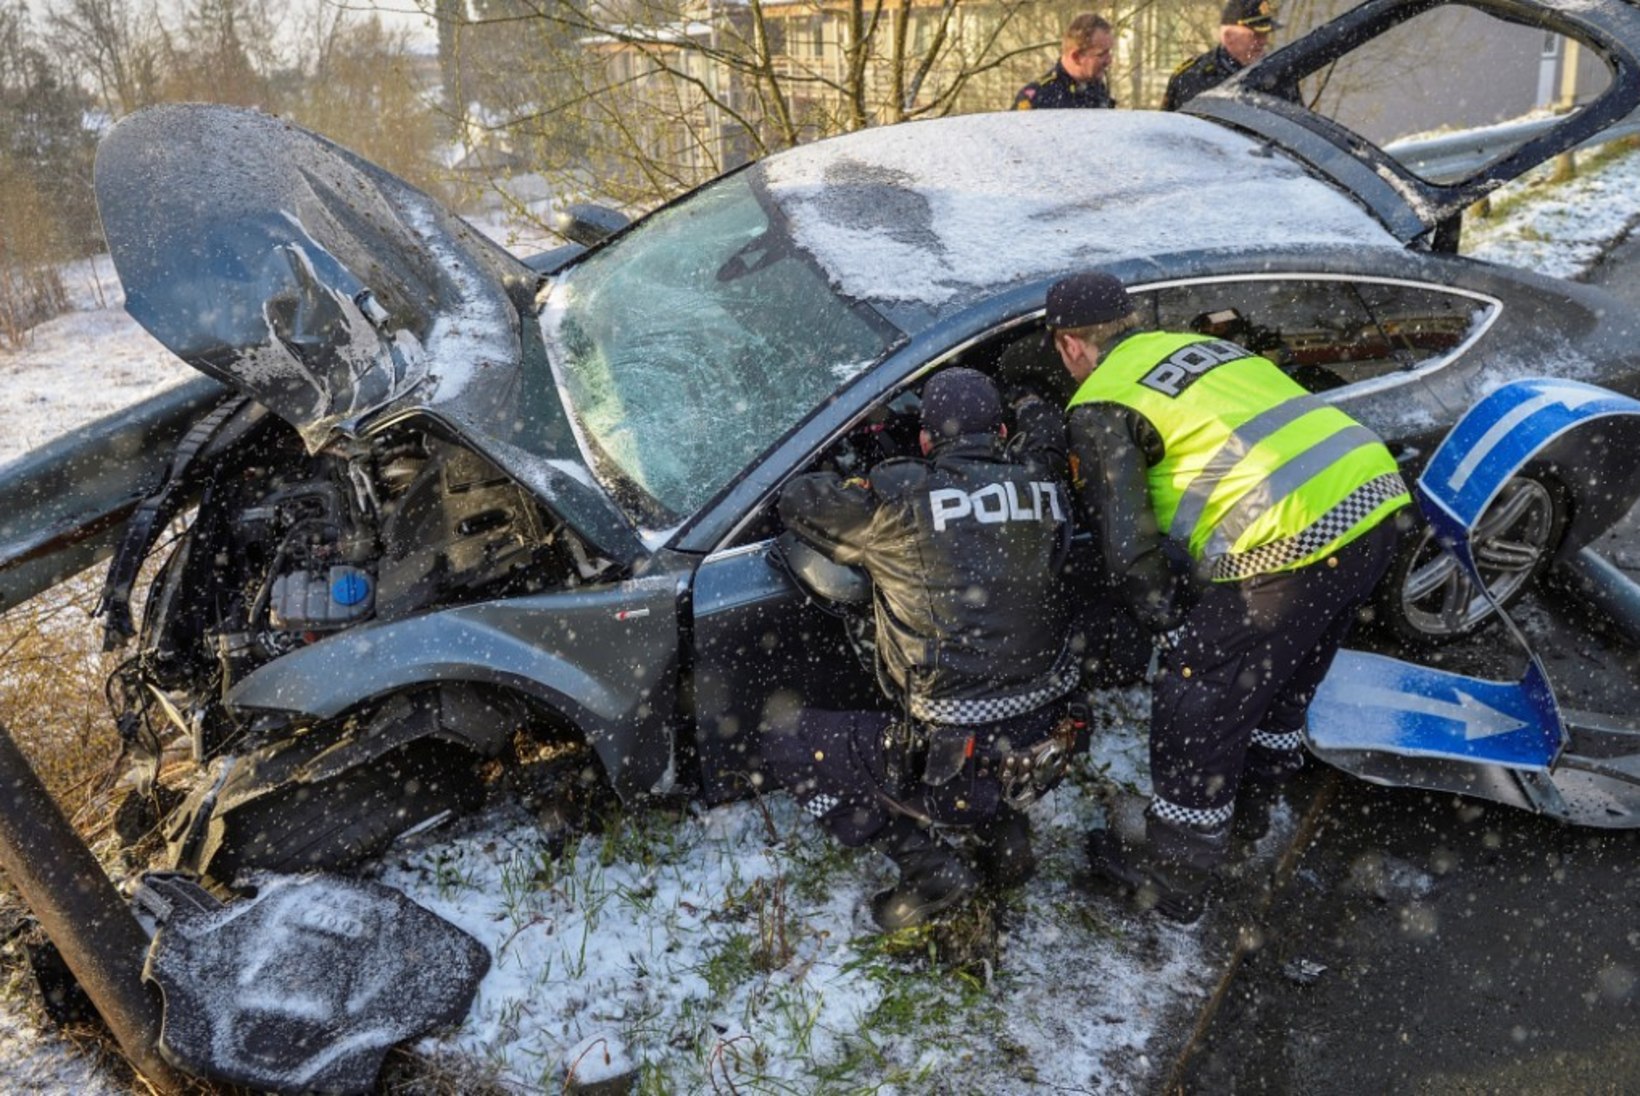 FOTOD: Petter Northug sõitis purjus peaga auto romuks!